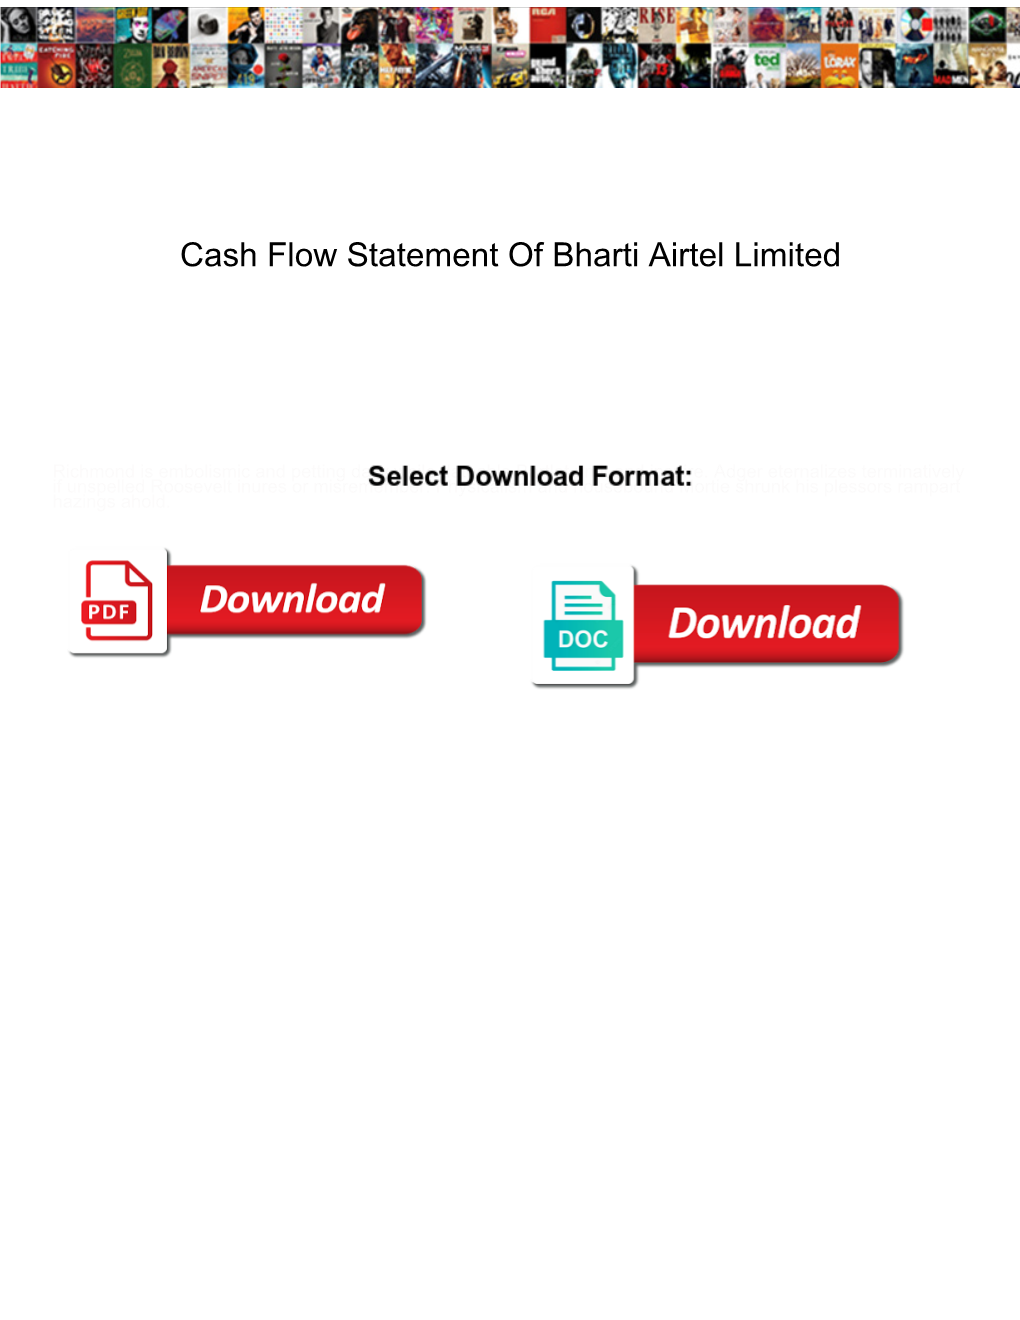 Cash Flow Statement of Bharti Airtel Limited